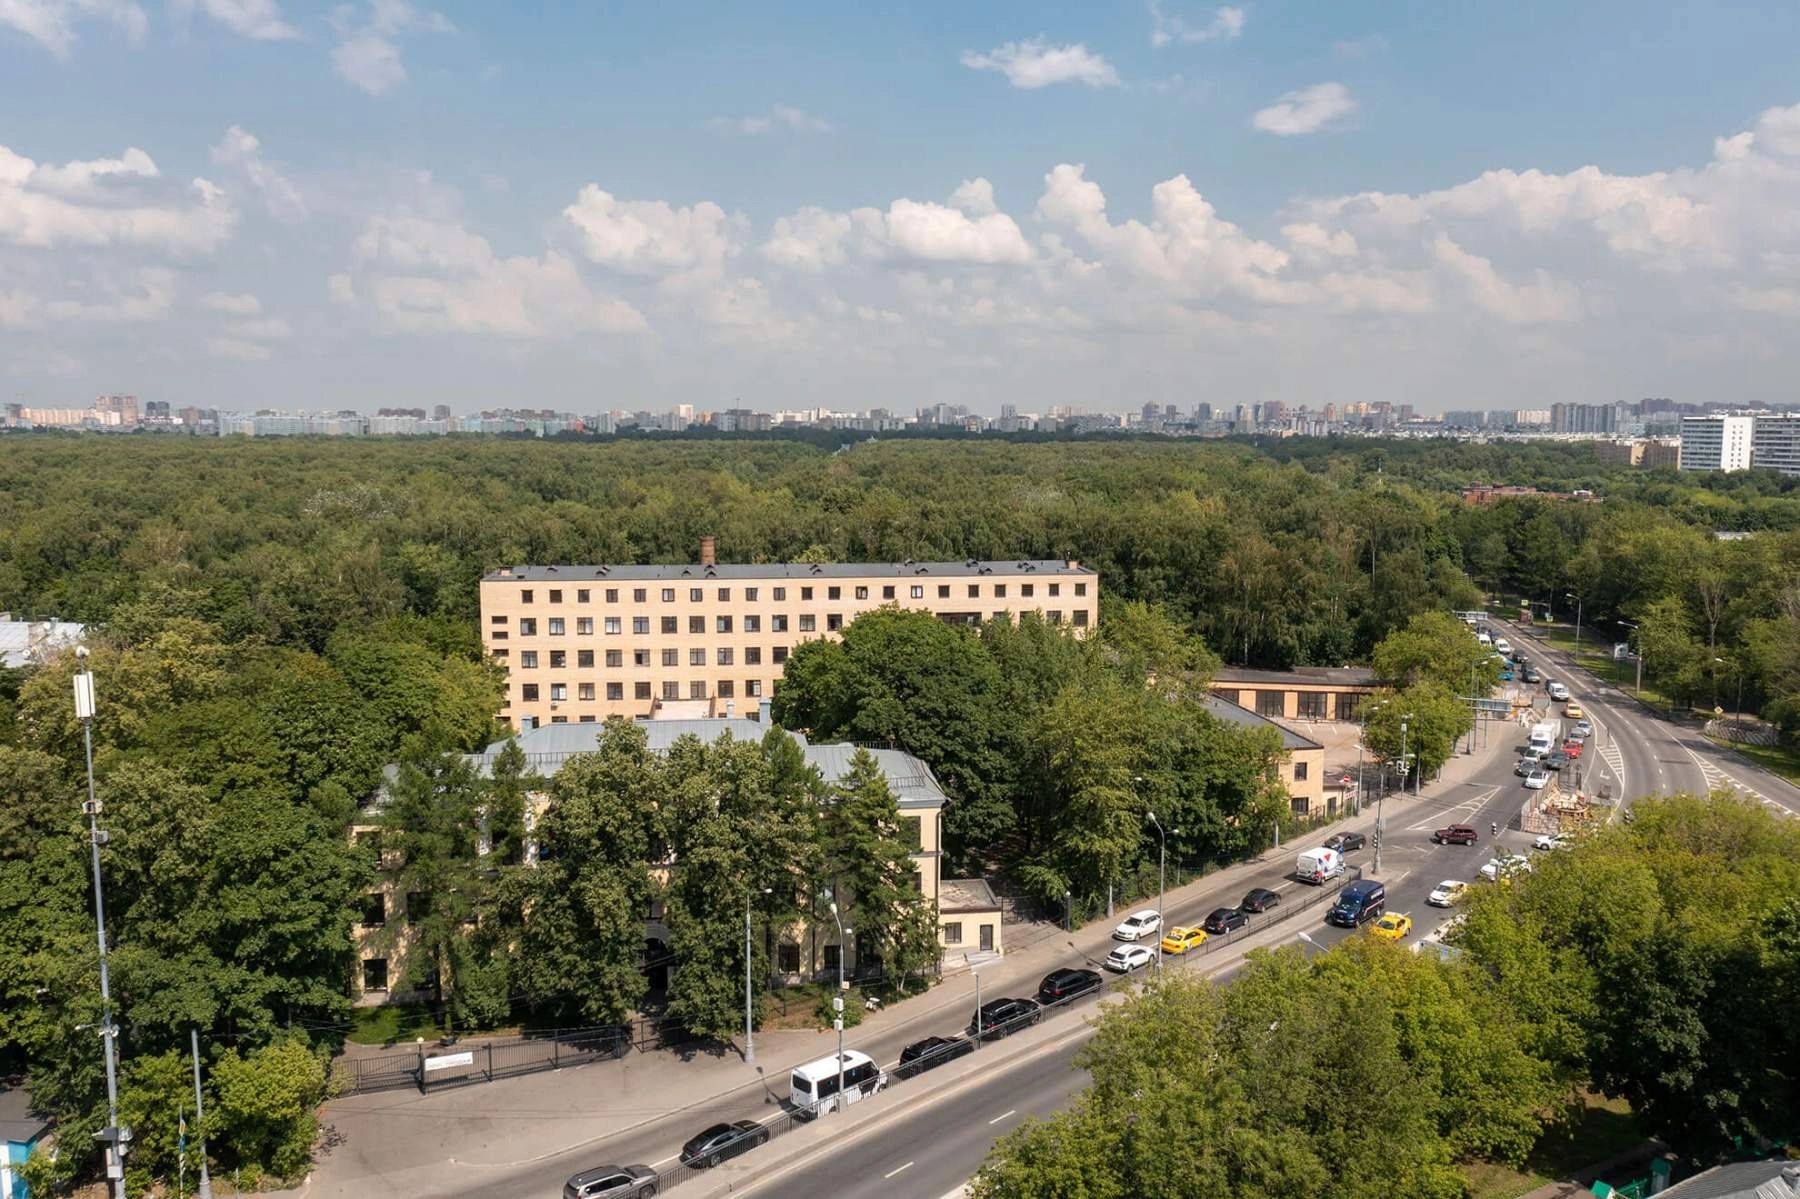 Продам квартиру в Москве по адресу аллея Первой Маёвки, 15с3, площадь 212 квм Недвижимость Москва (Россия)  Апартаменты сдаются в готовом ремонте